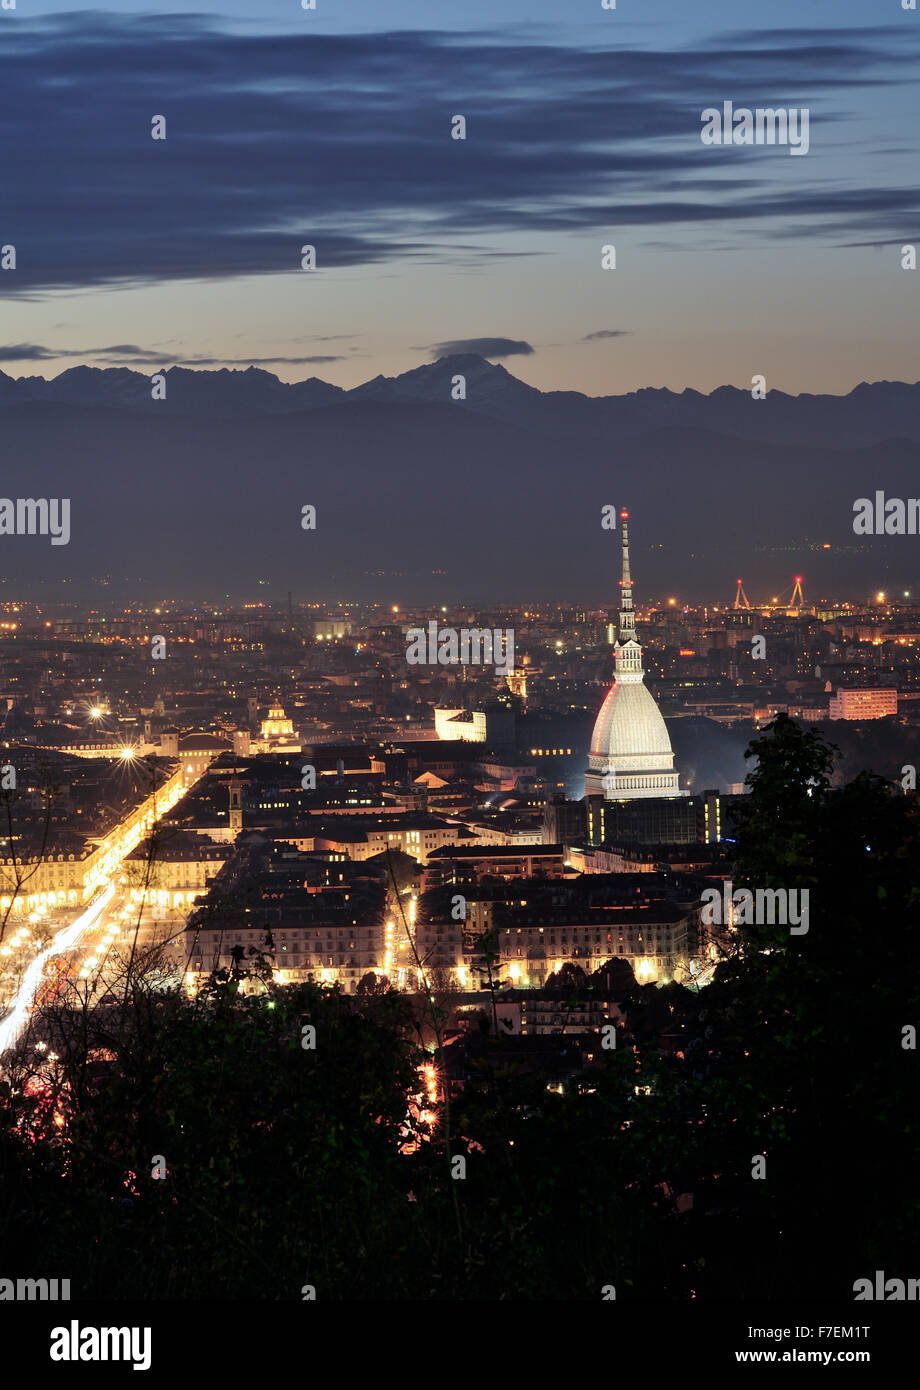 La ville de Turin au coucher du soleil - Mole Antonelliana, via Po et les Alpes Banque D'Images